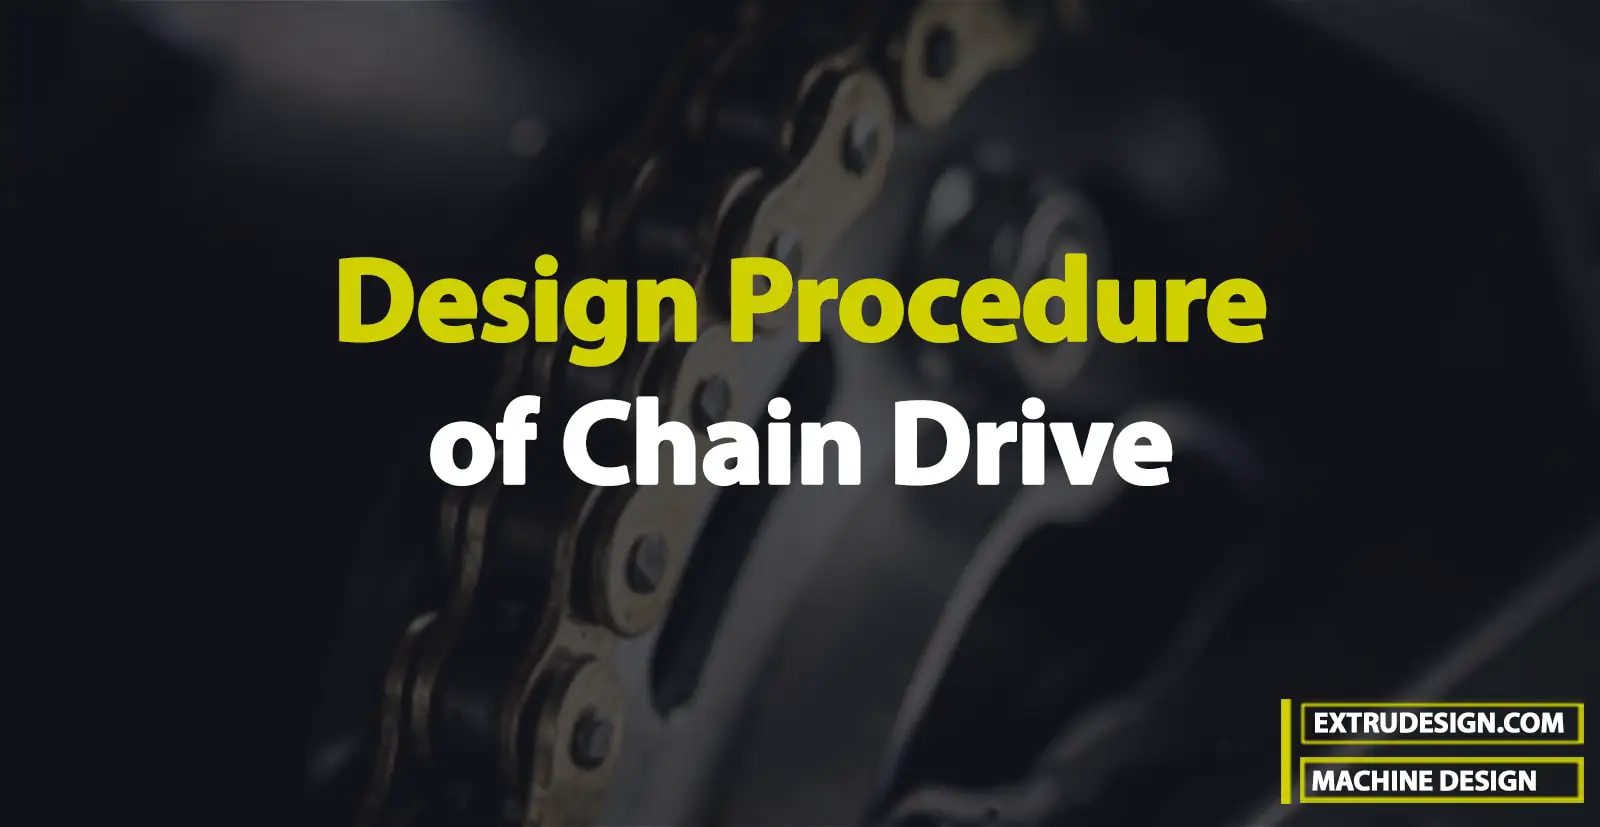 Design Procedure of Chain Drive